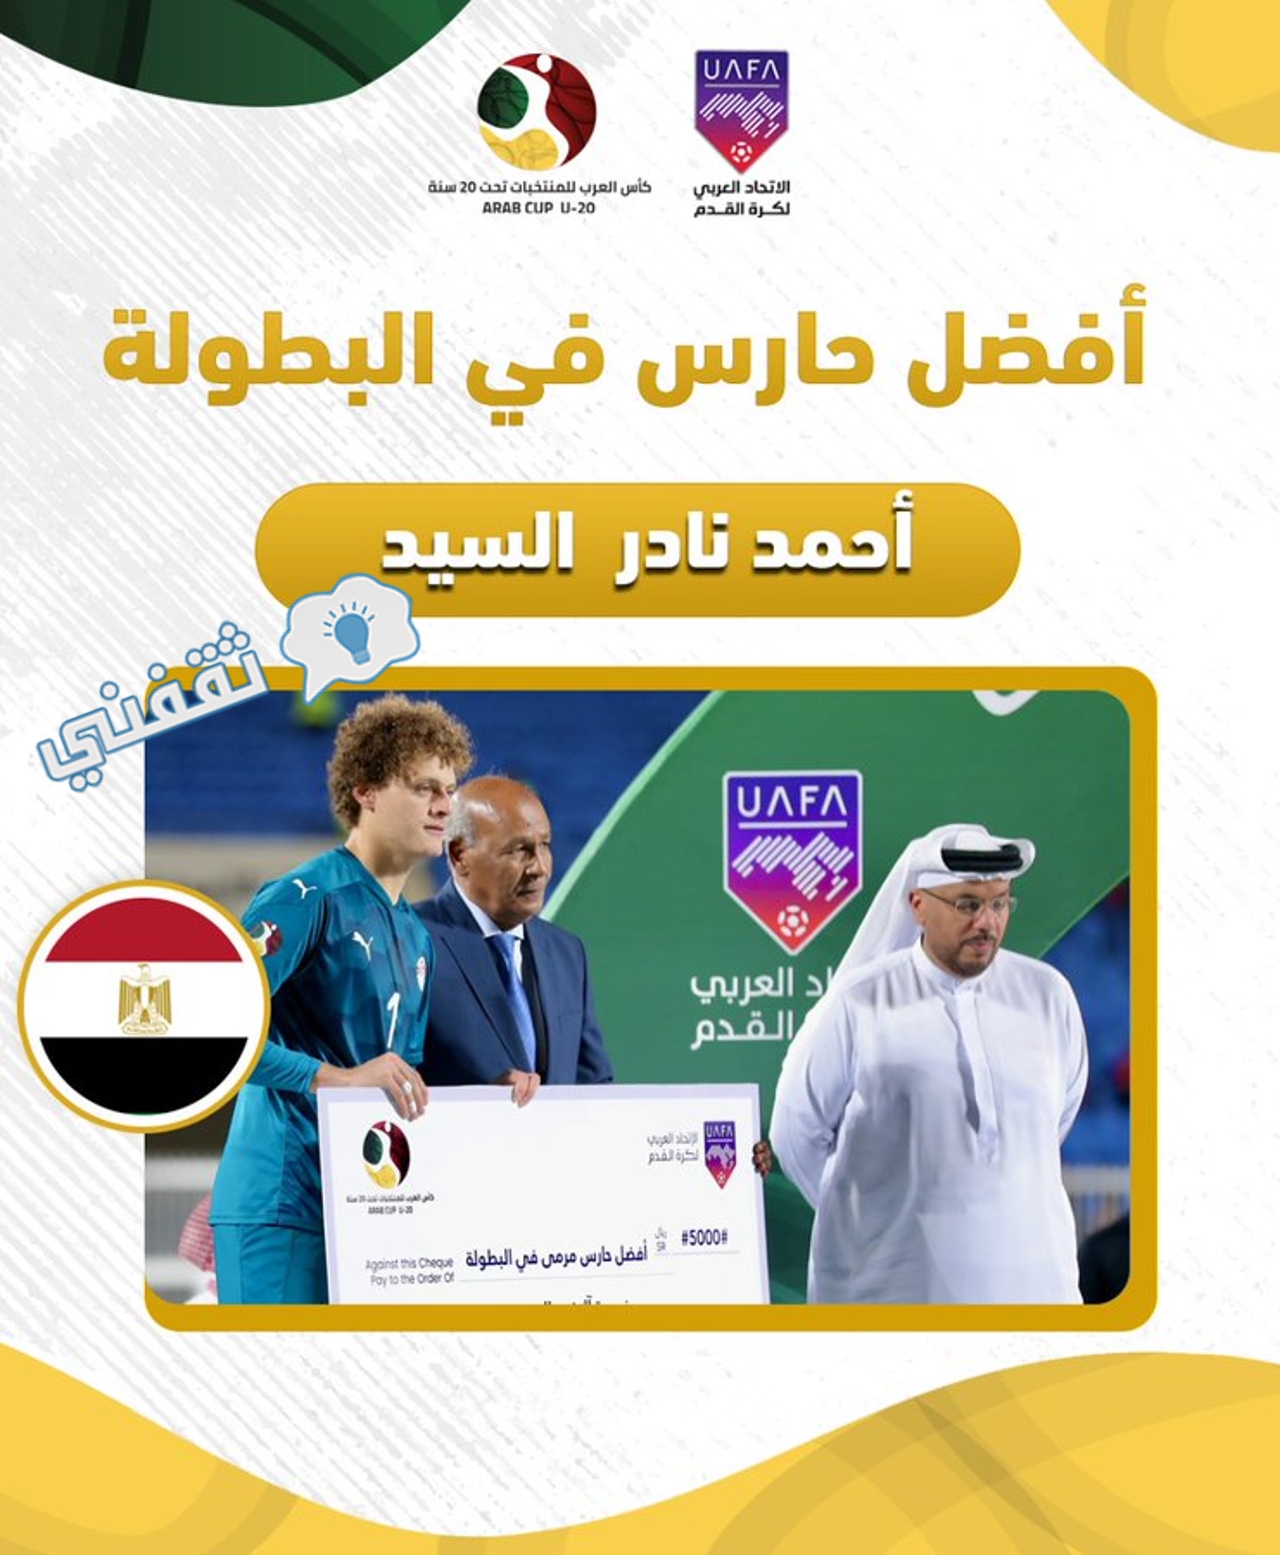 فوز اللاعب المصري أحمد نادر السيد بجائزة أفضل حارس مرمى في البطولة